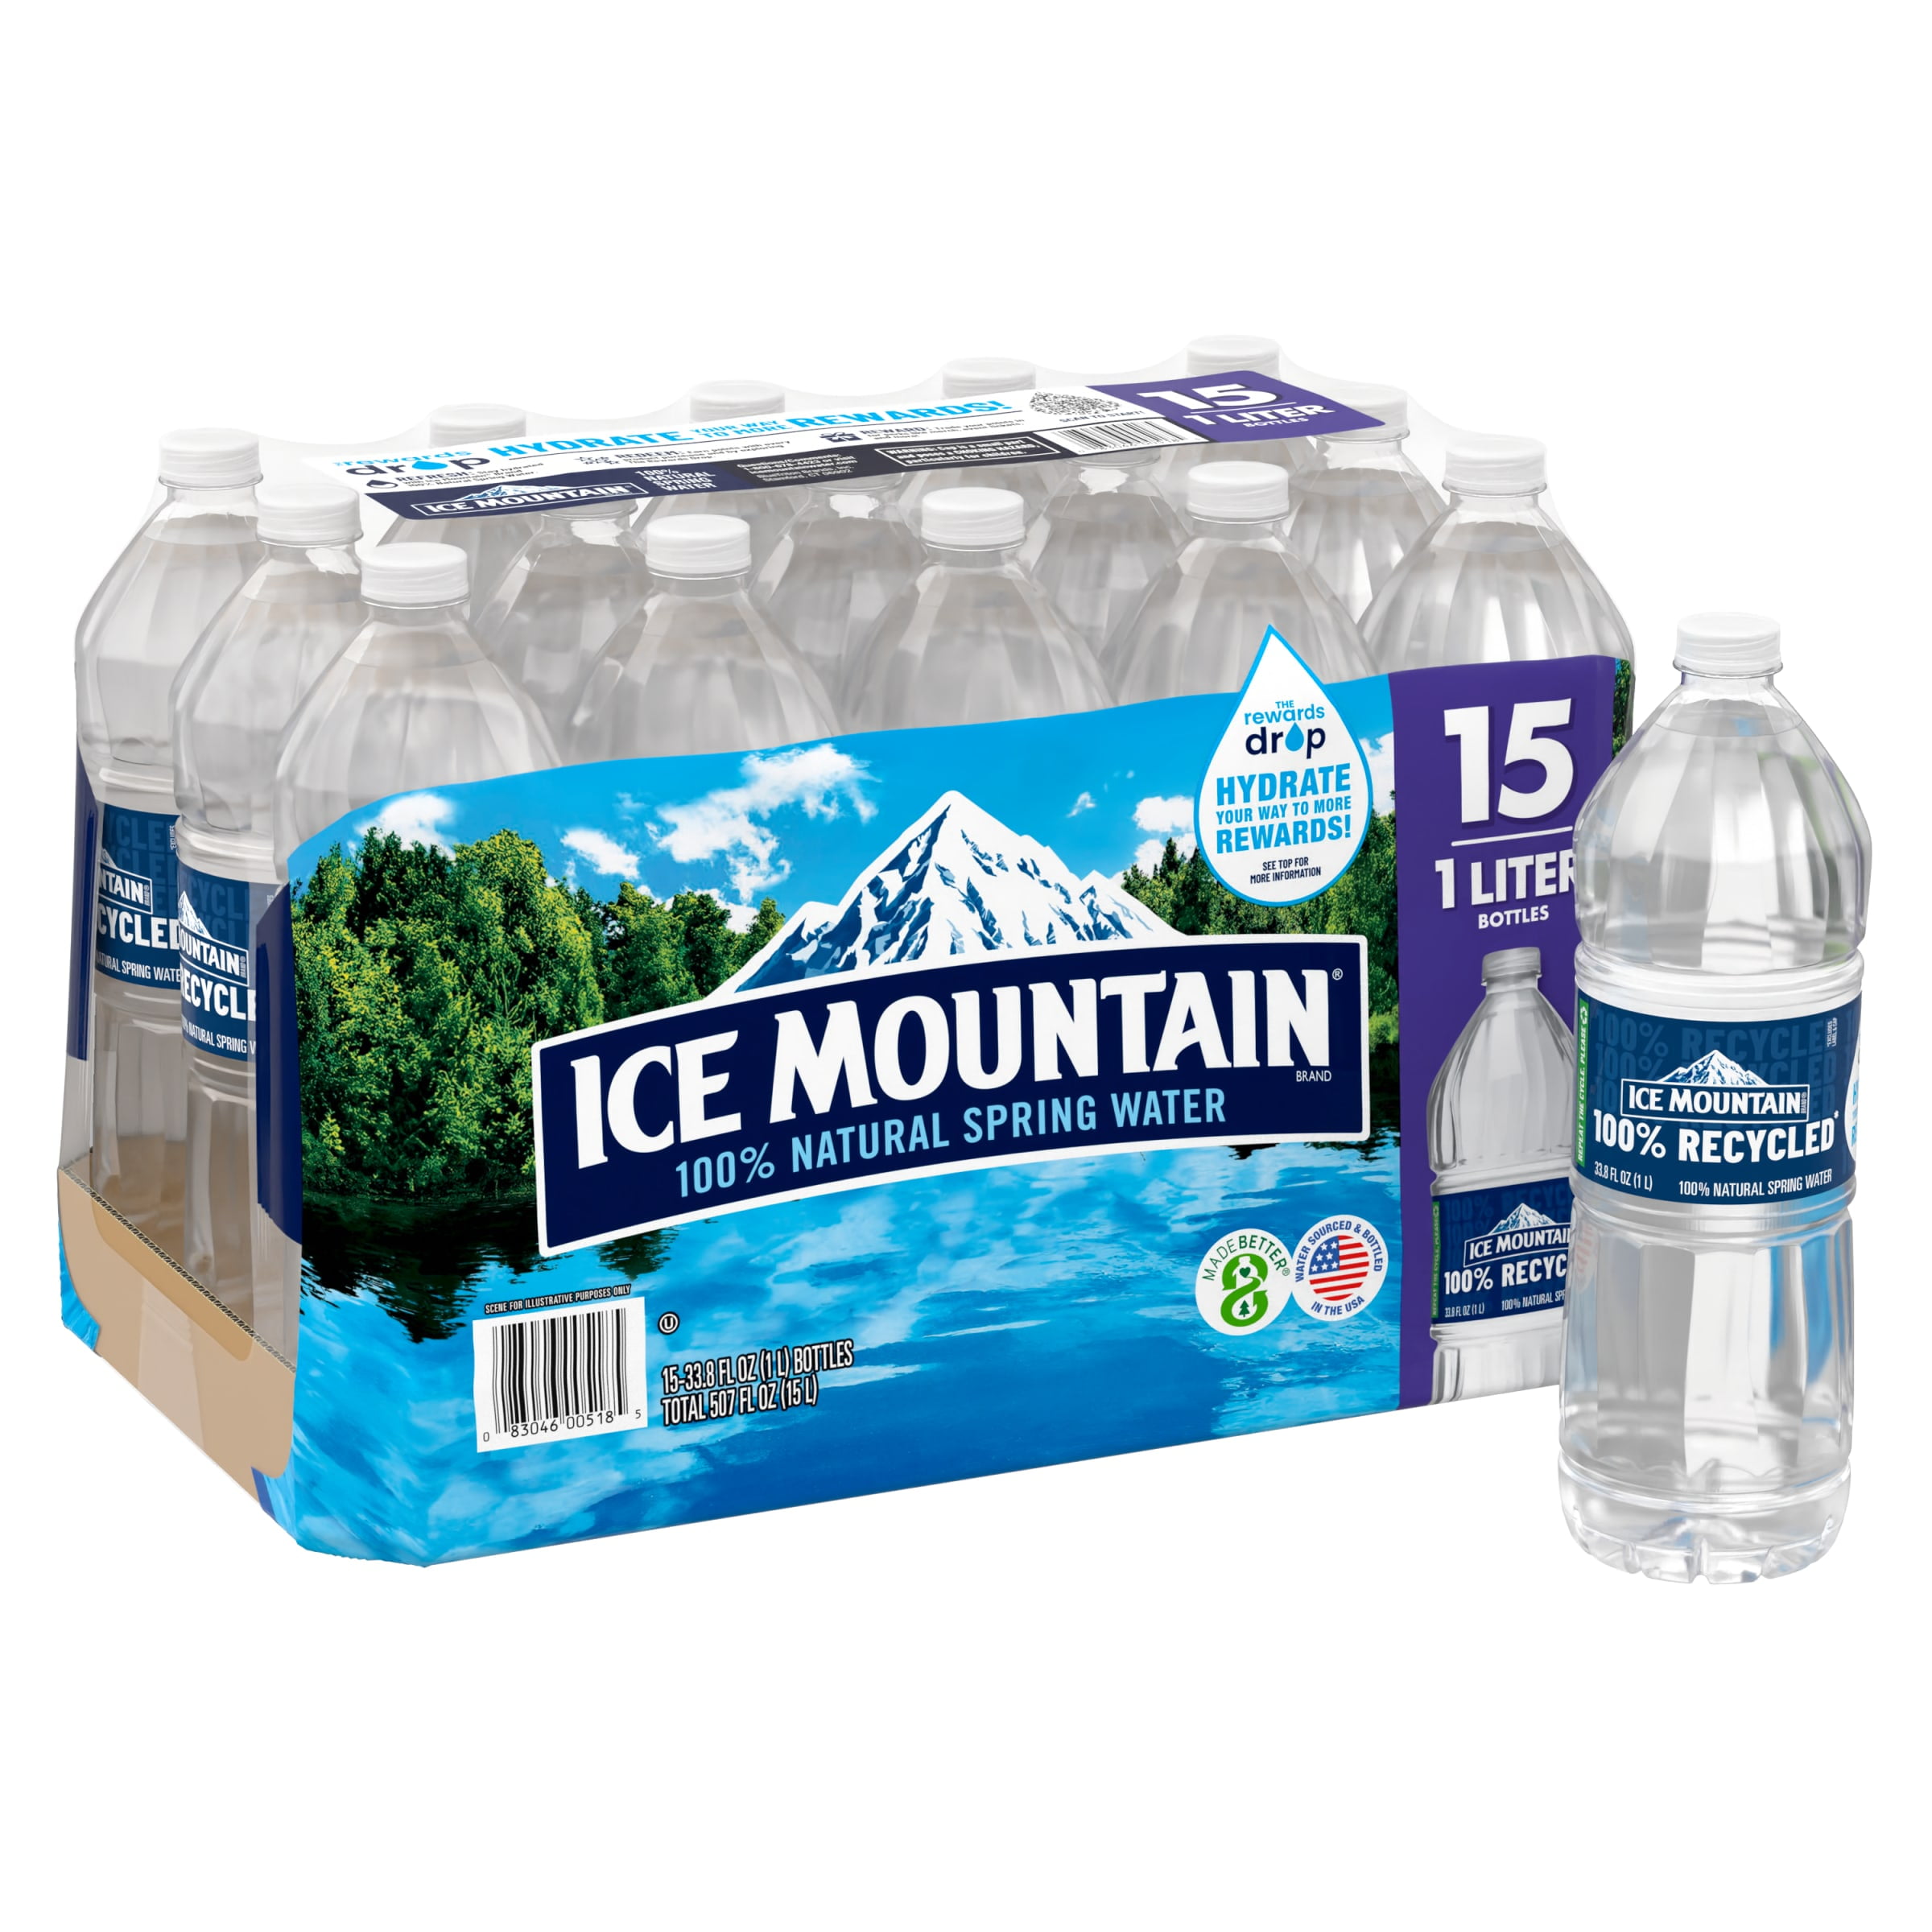 Ice Mountain Brand 100% Natural Spring Water - 12pk/12 fl oz Bottles